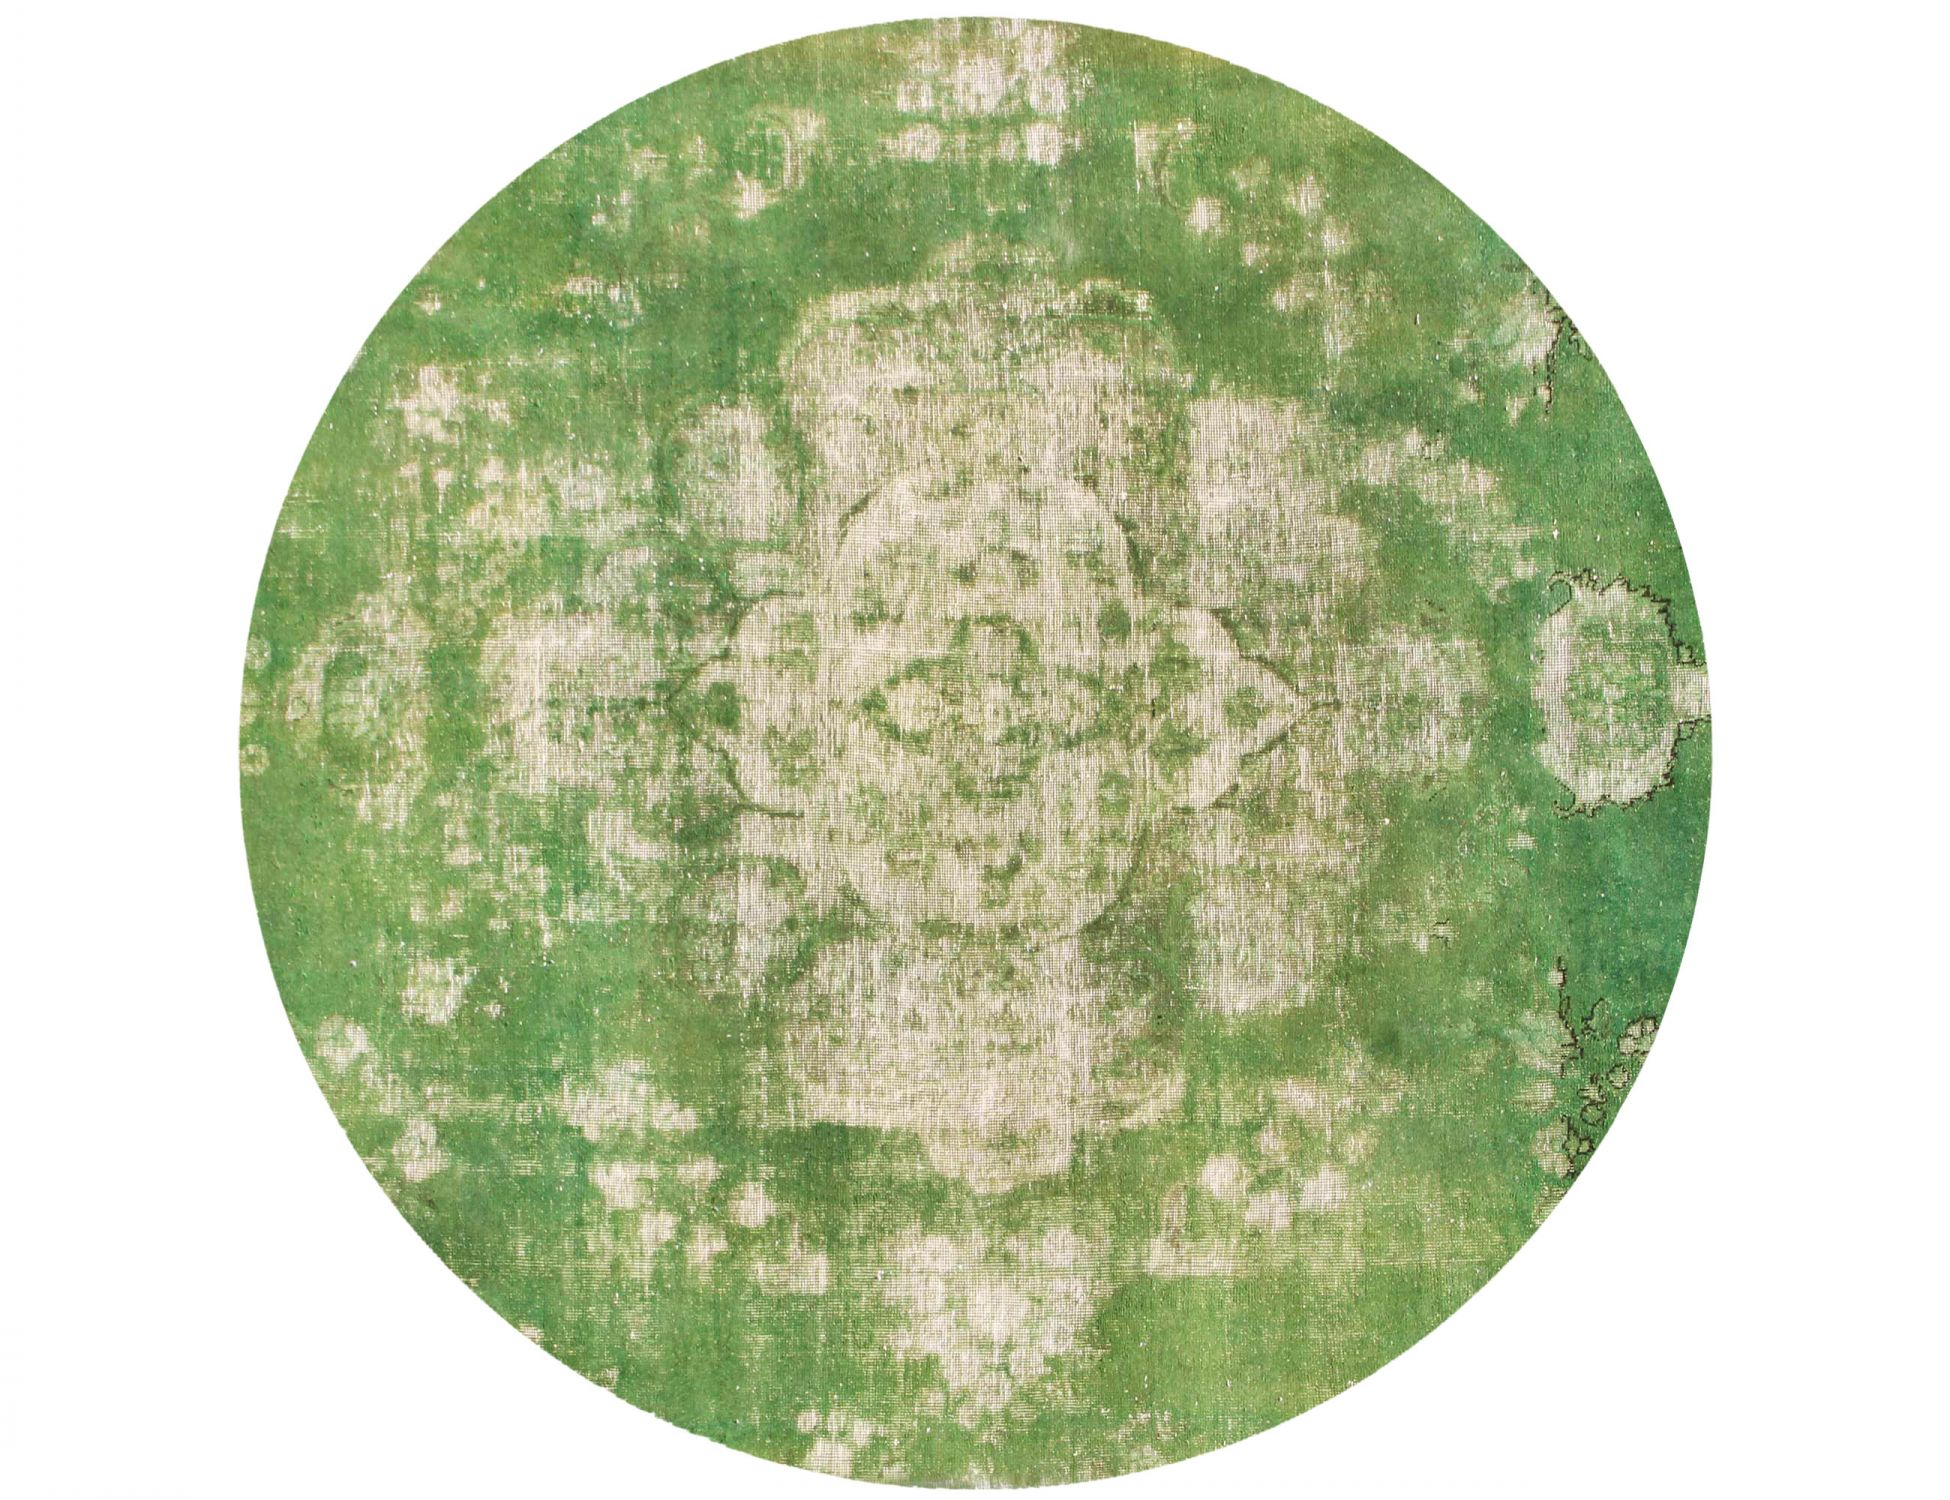 Rund  Vintage Teppich  grün <br/>213 x 213 cm